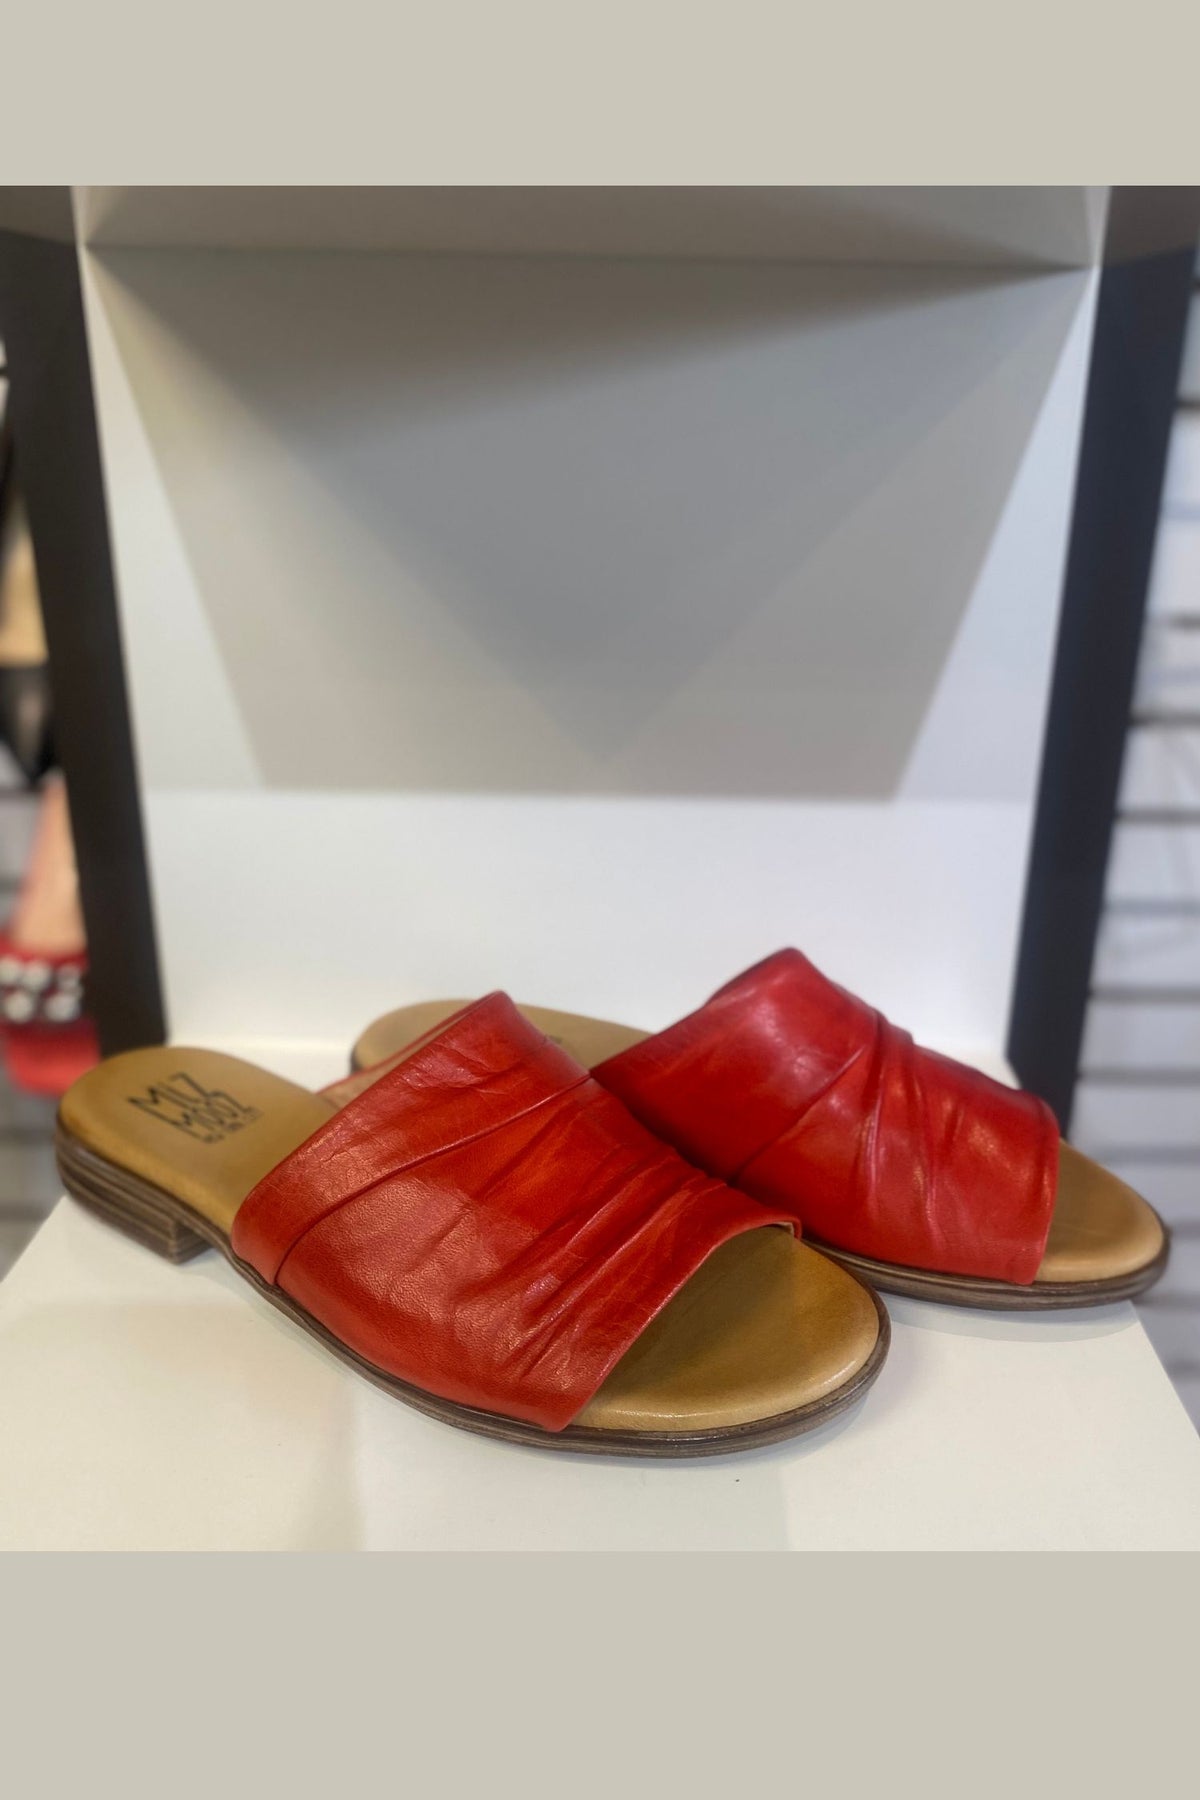 Miz Mooz Slide Sandal - Style Delilah, pair, scarlet